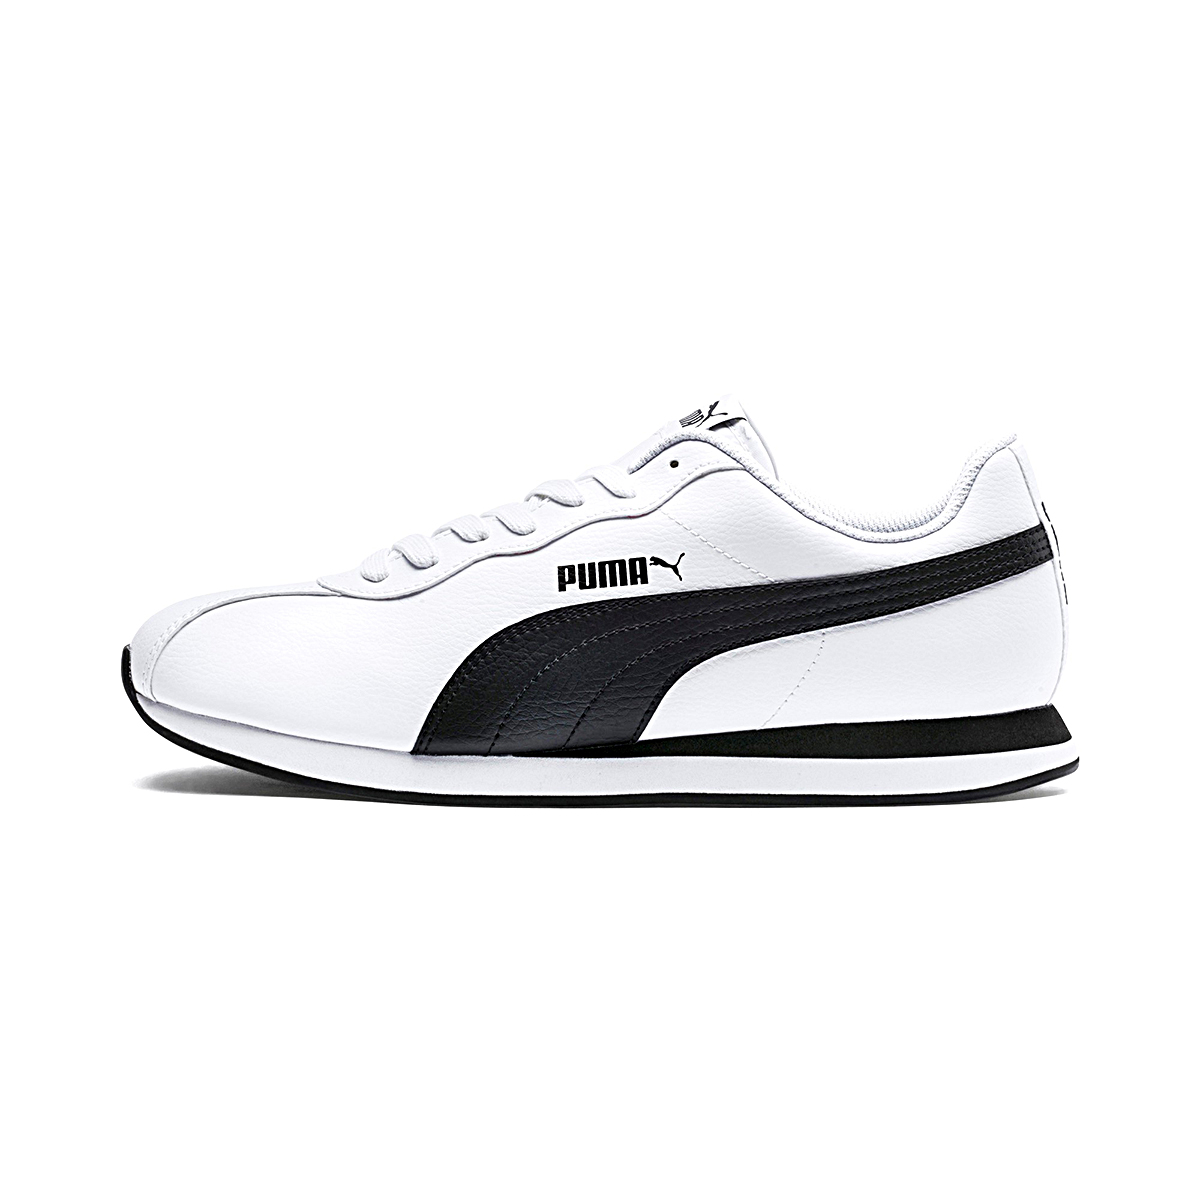 Puma Turin II Herren Sneaker Schuhe weiss schwarz 366962 04